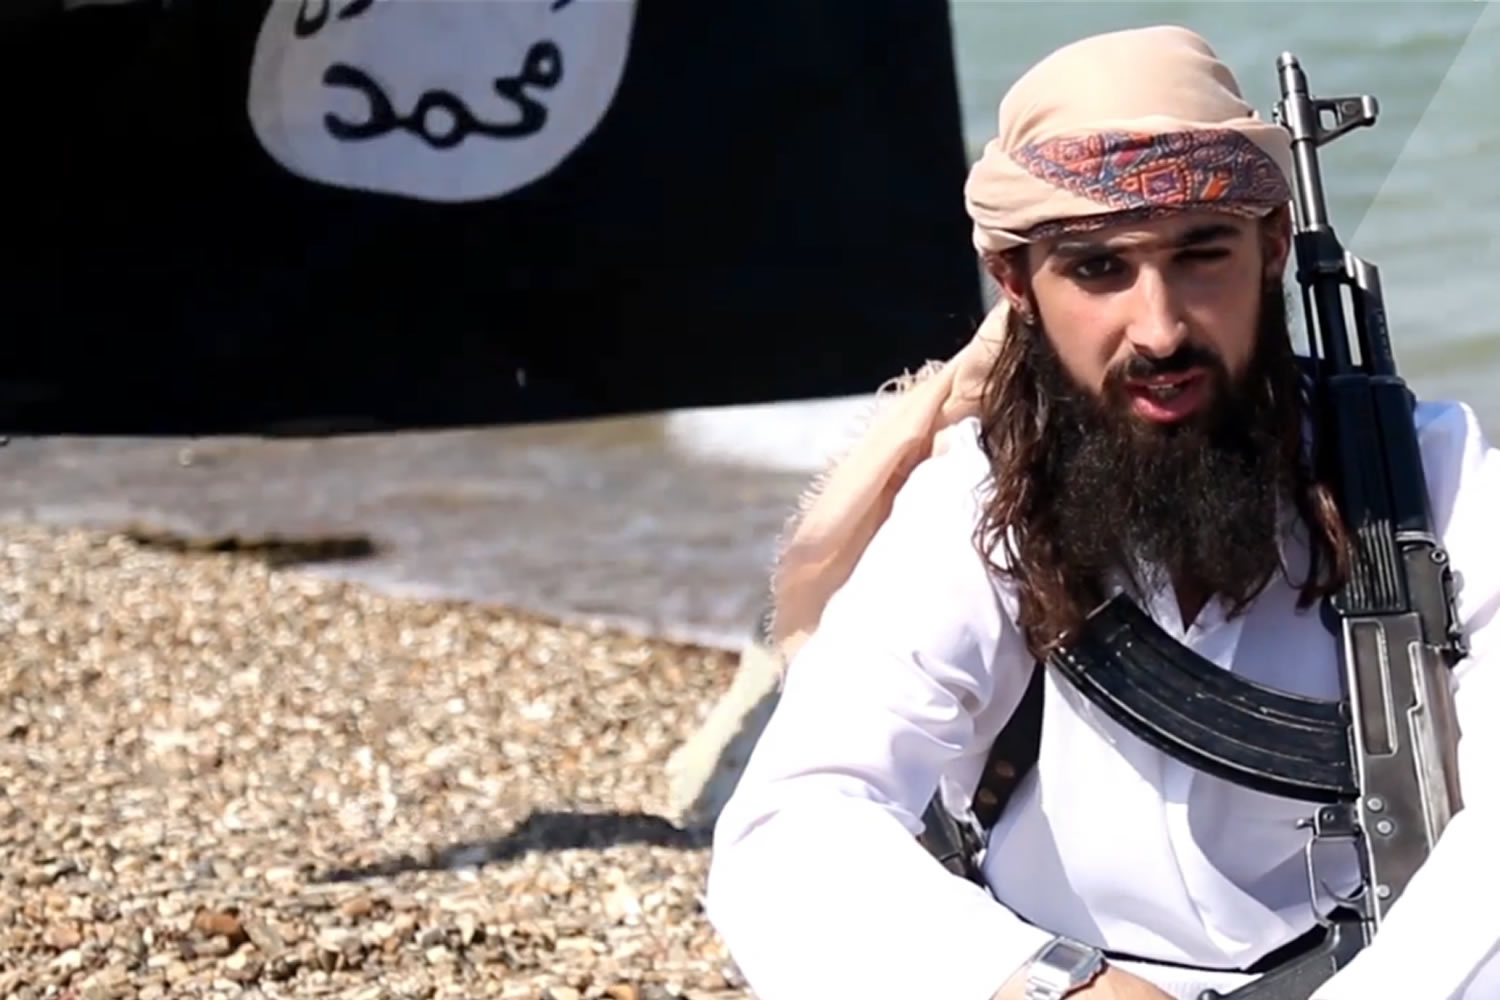 El yihadista francés se inmola y lanza un vídeo póstumo en el que se aparece en el desierto